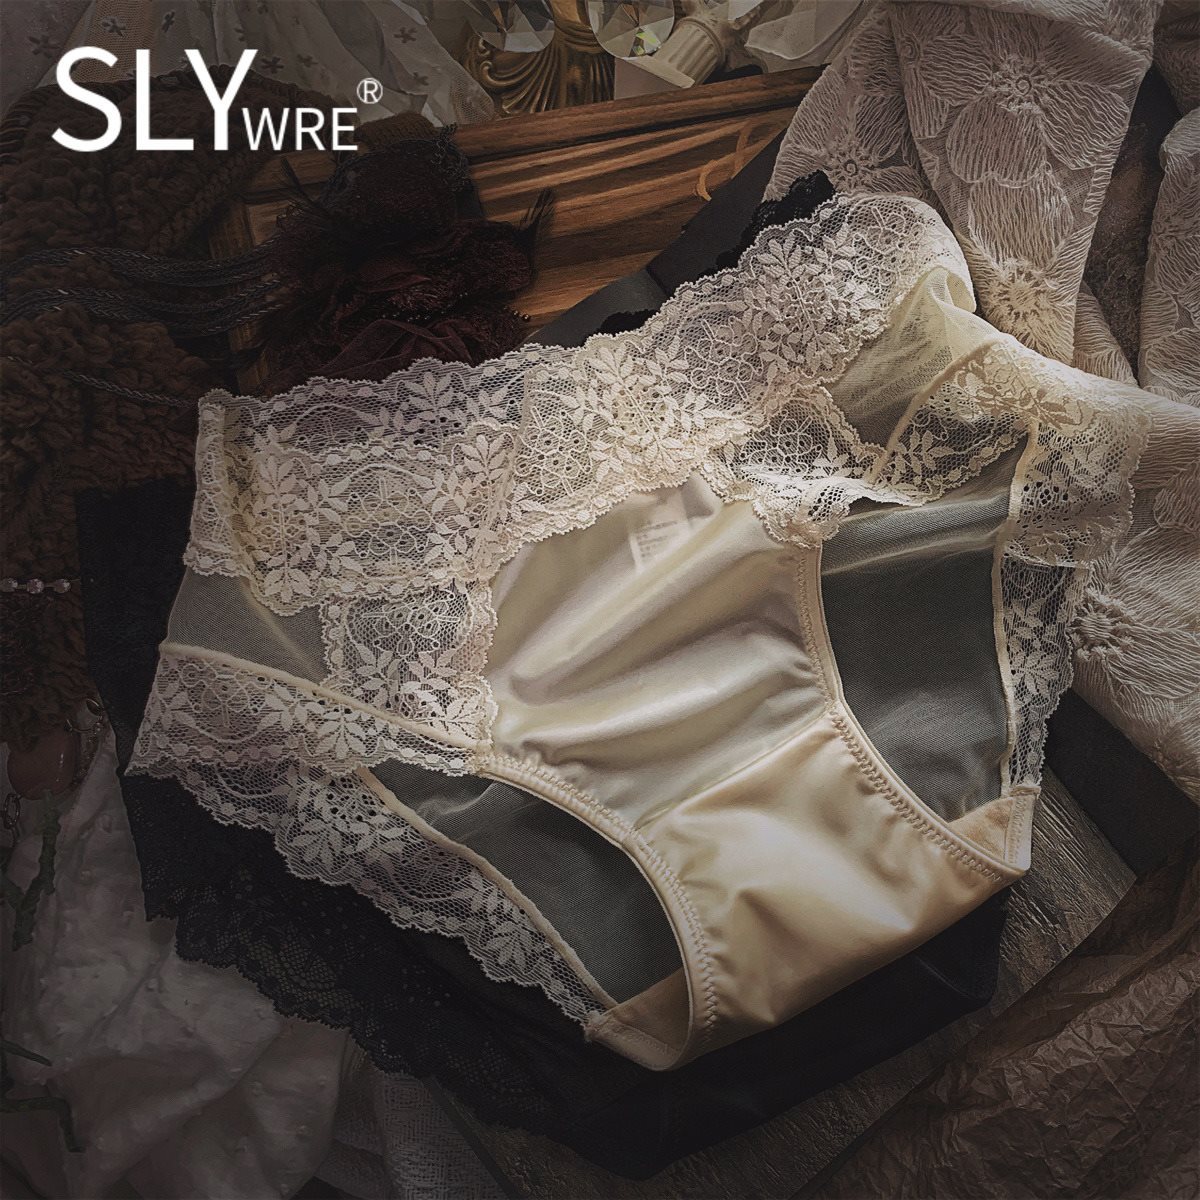 法式SLY WRE缎面蕾丝内裤女士超薄款性感透明网纱中腰无痕三角裤